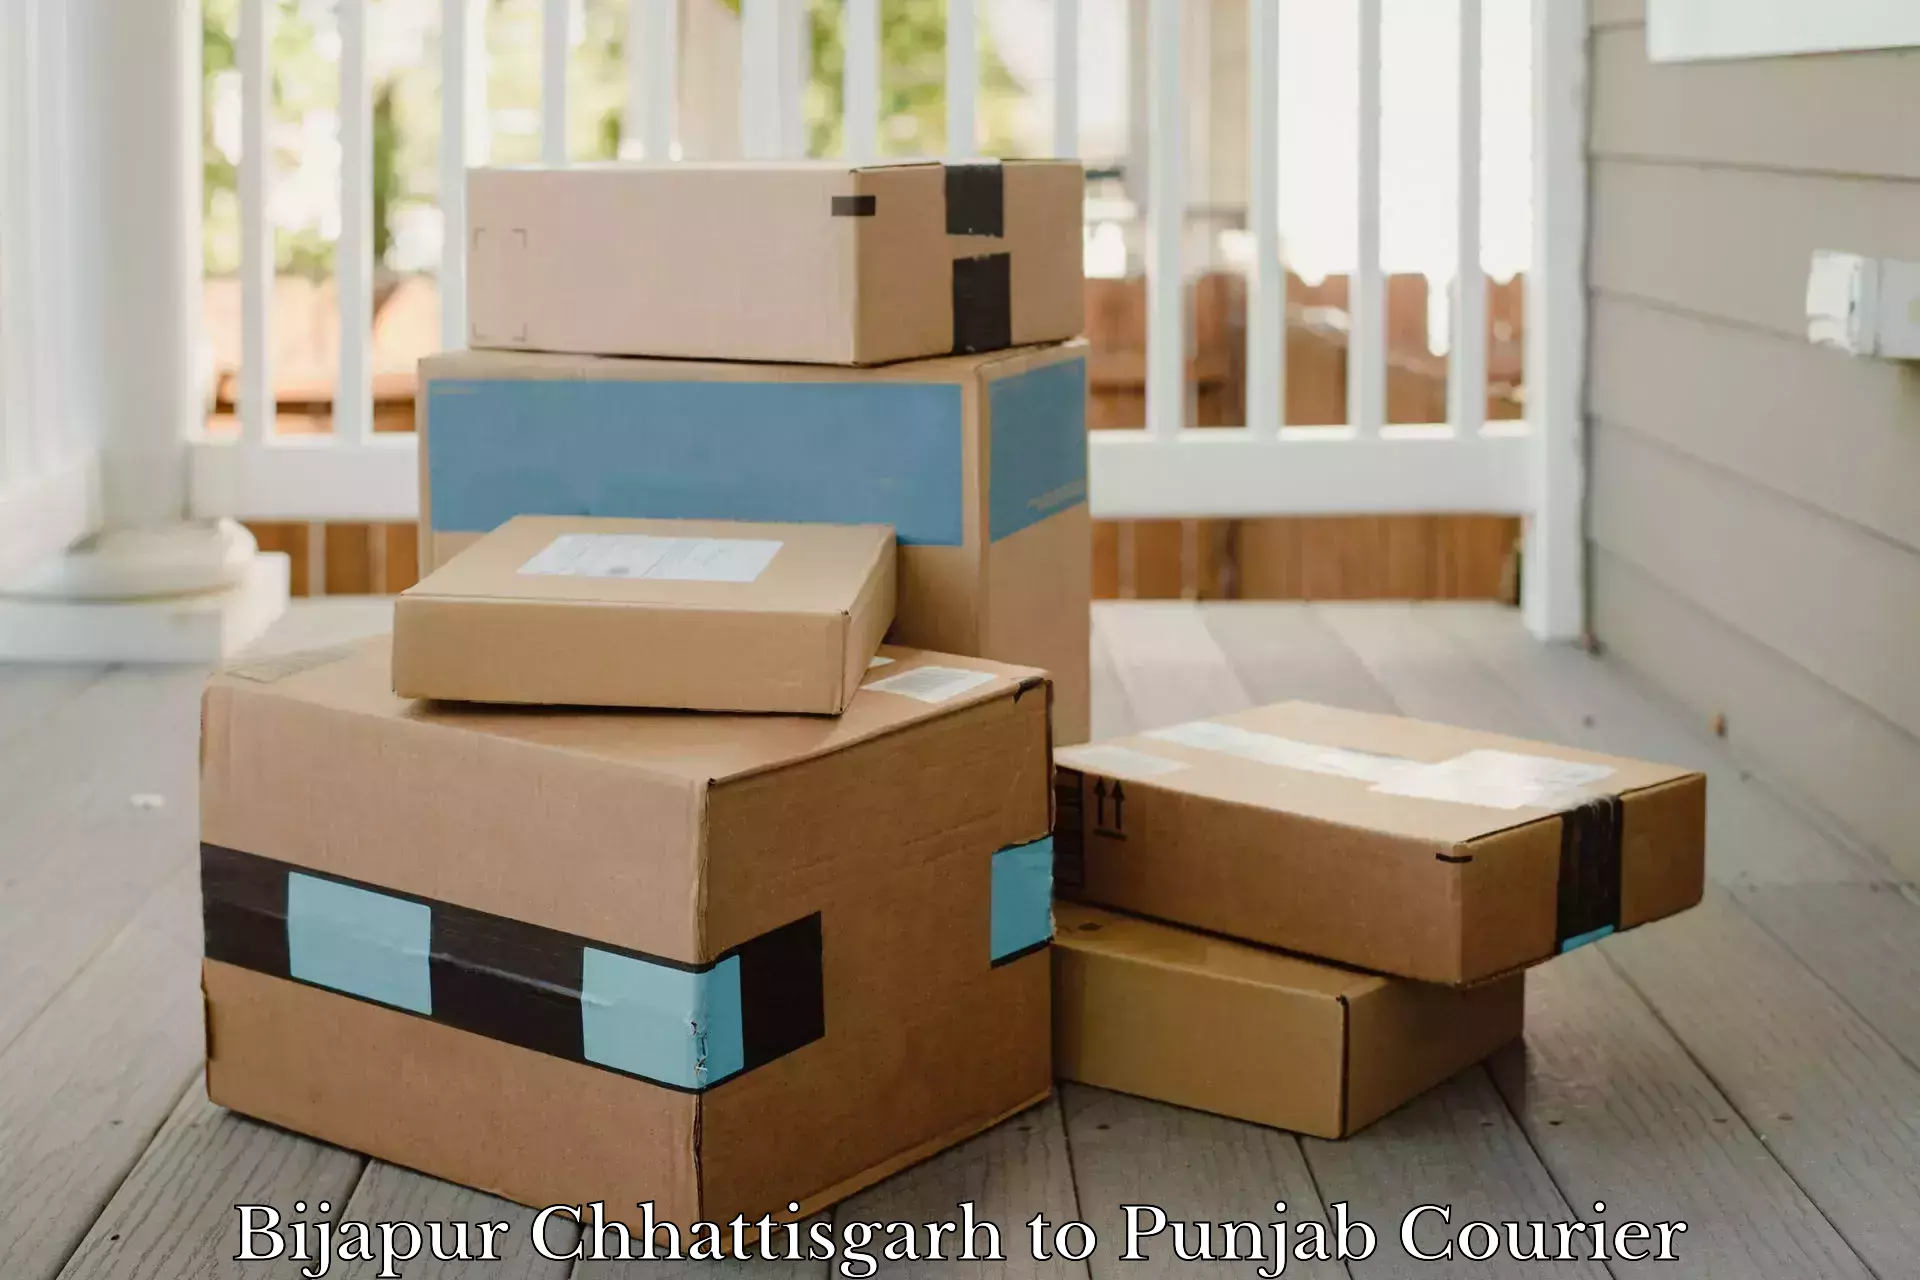 Urgent courier needs Bijapur Chhattisgarh to Firozpur